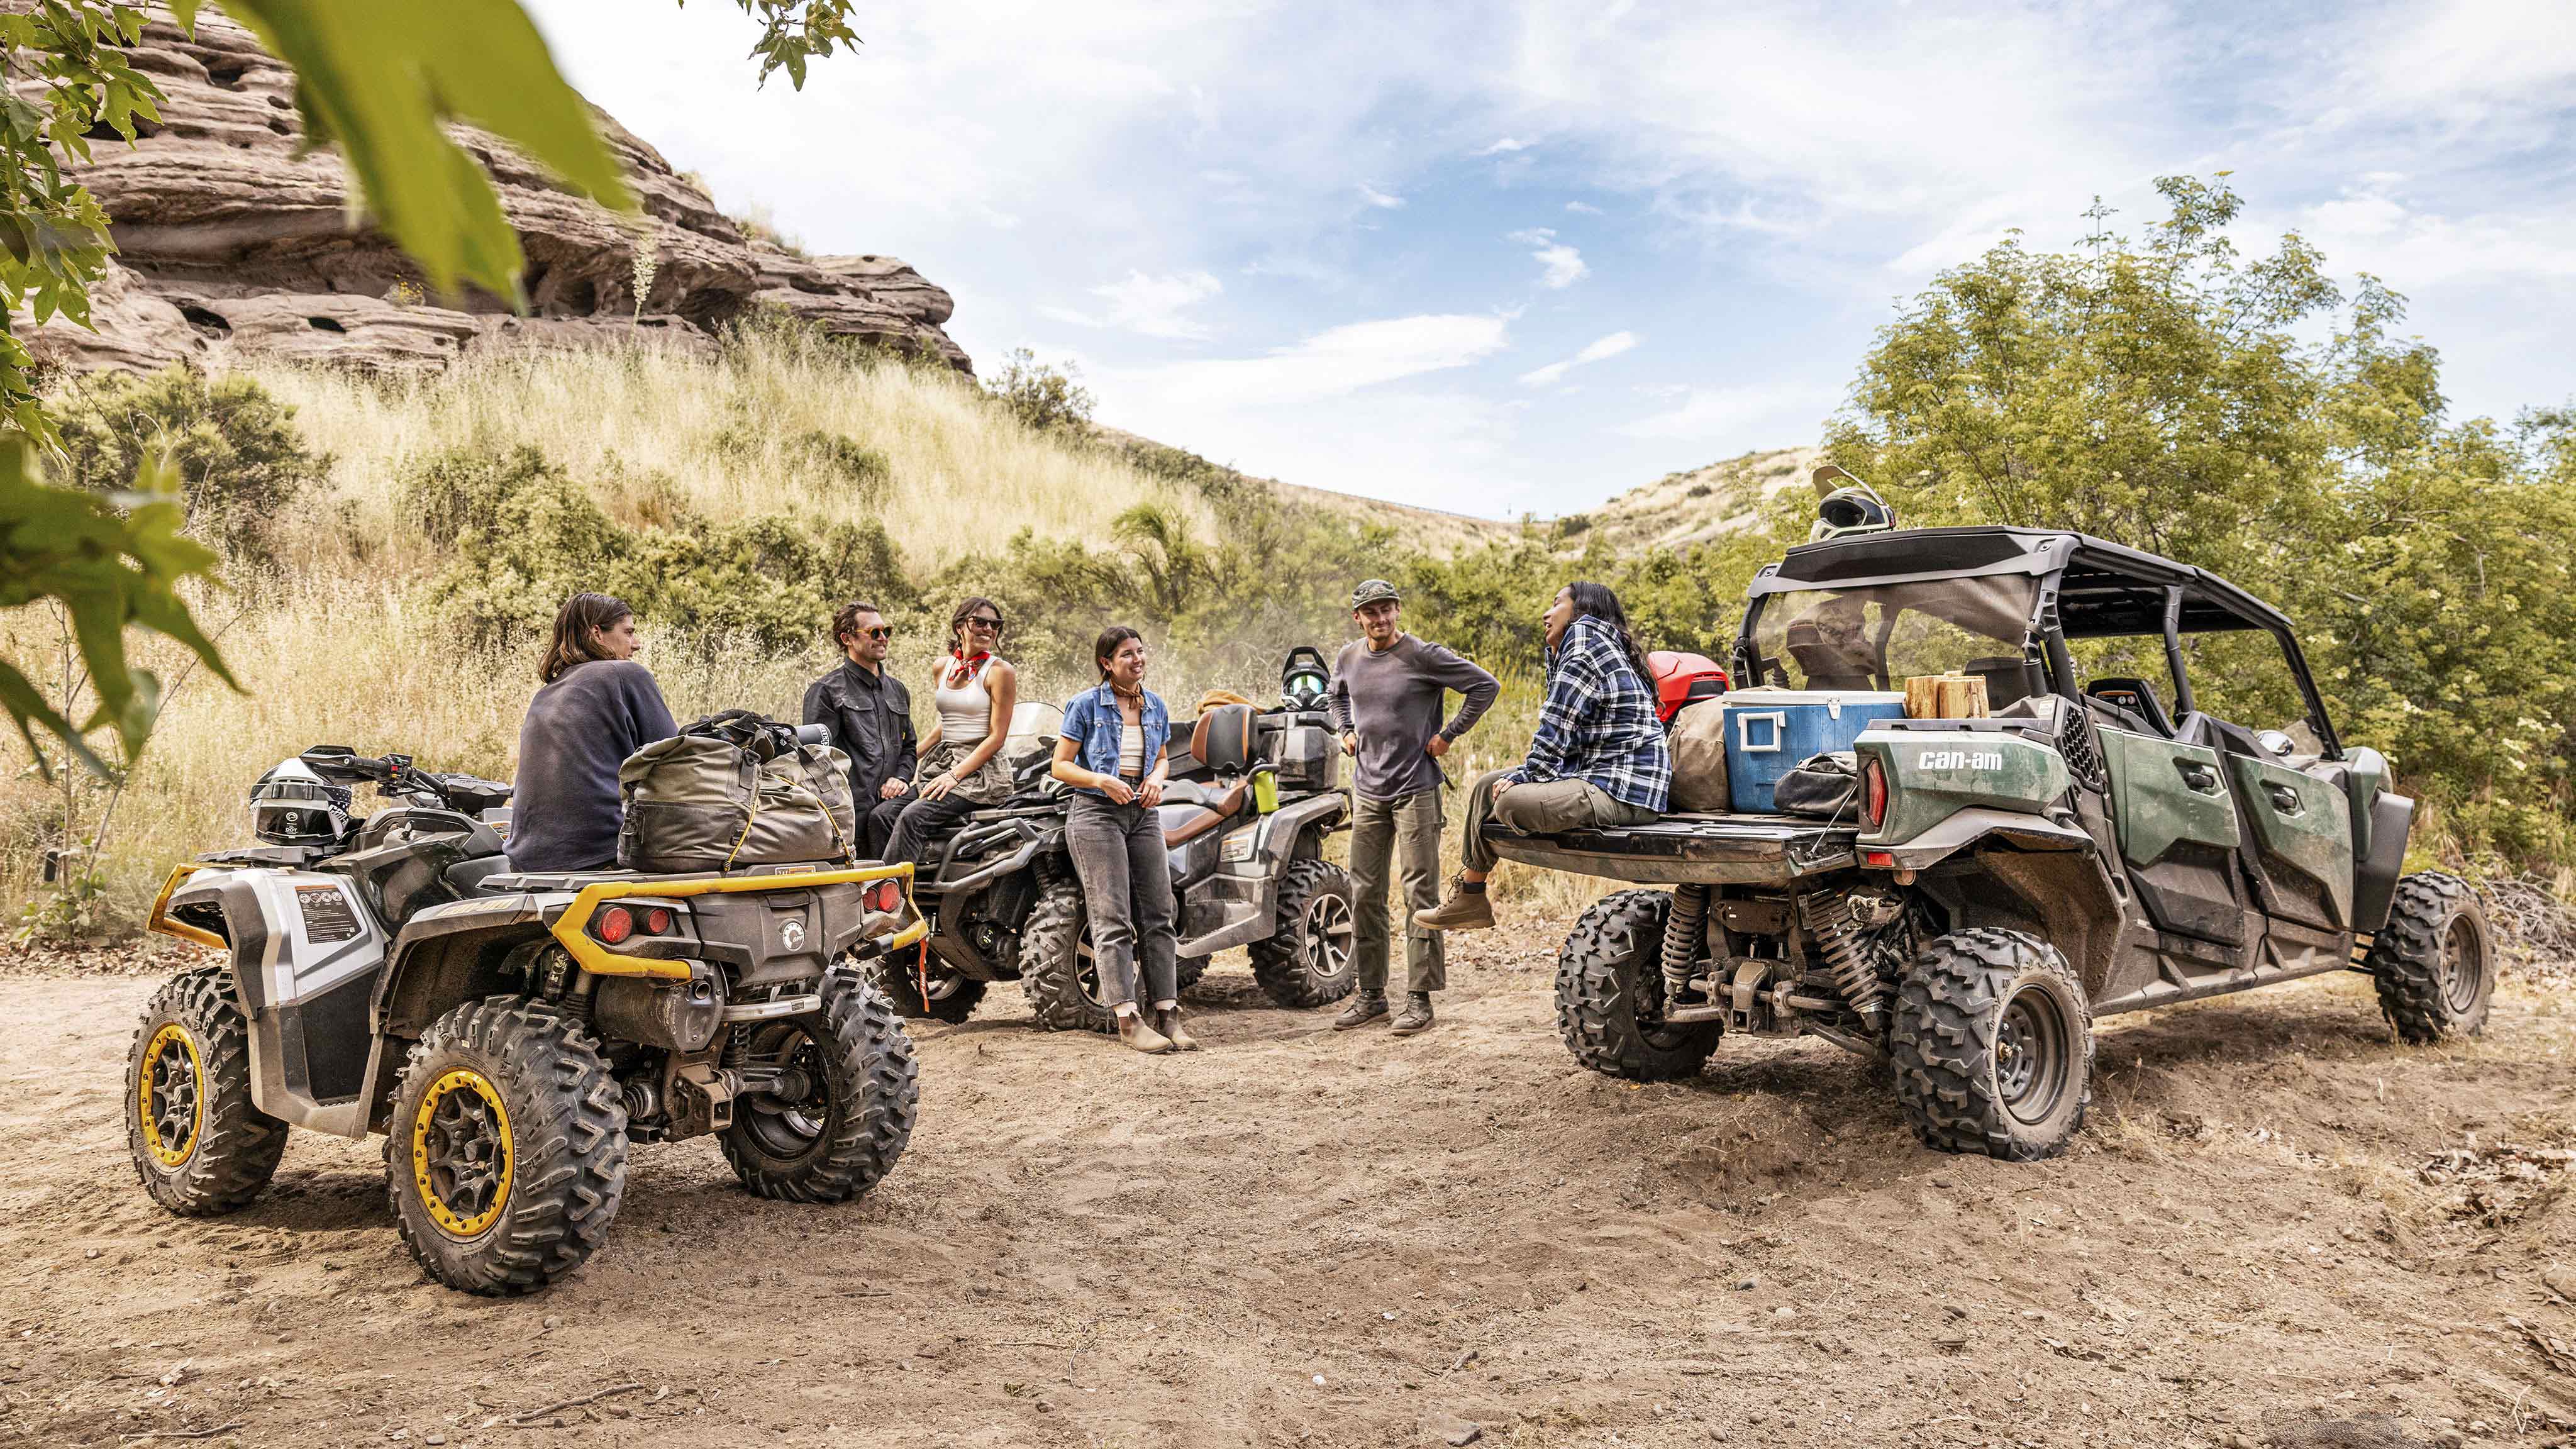 Μια ομάδα αναβατών κάνει ένα διάλειμμα στην έρημο δίπλα στα οχήματα Can-Am ATV και SxS.